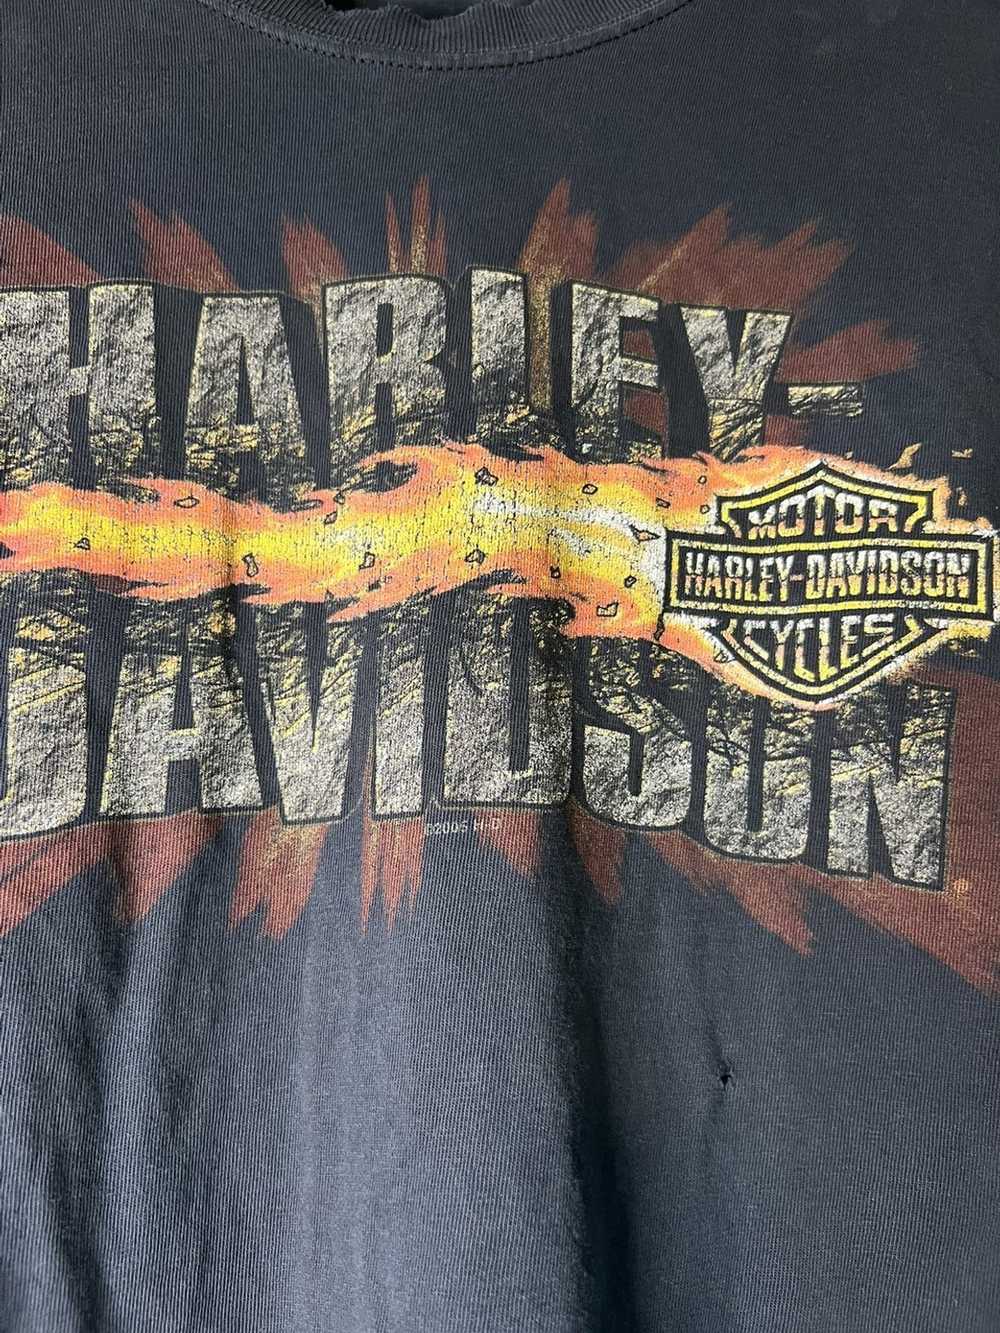 Harley Davidson 2005 Harley Davidson shirt - image 2